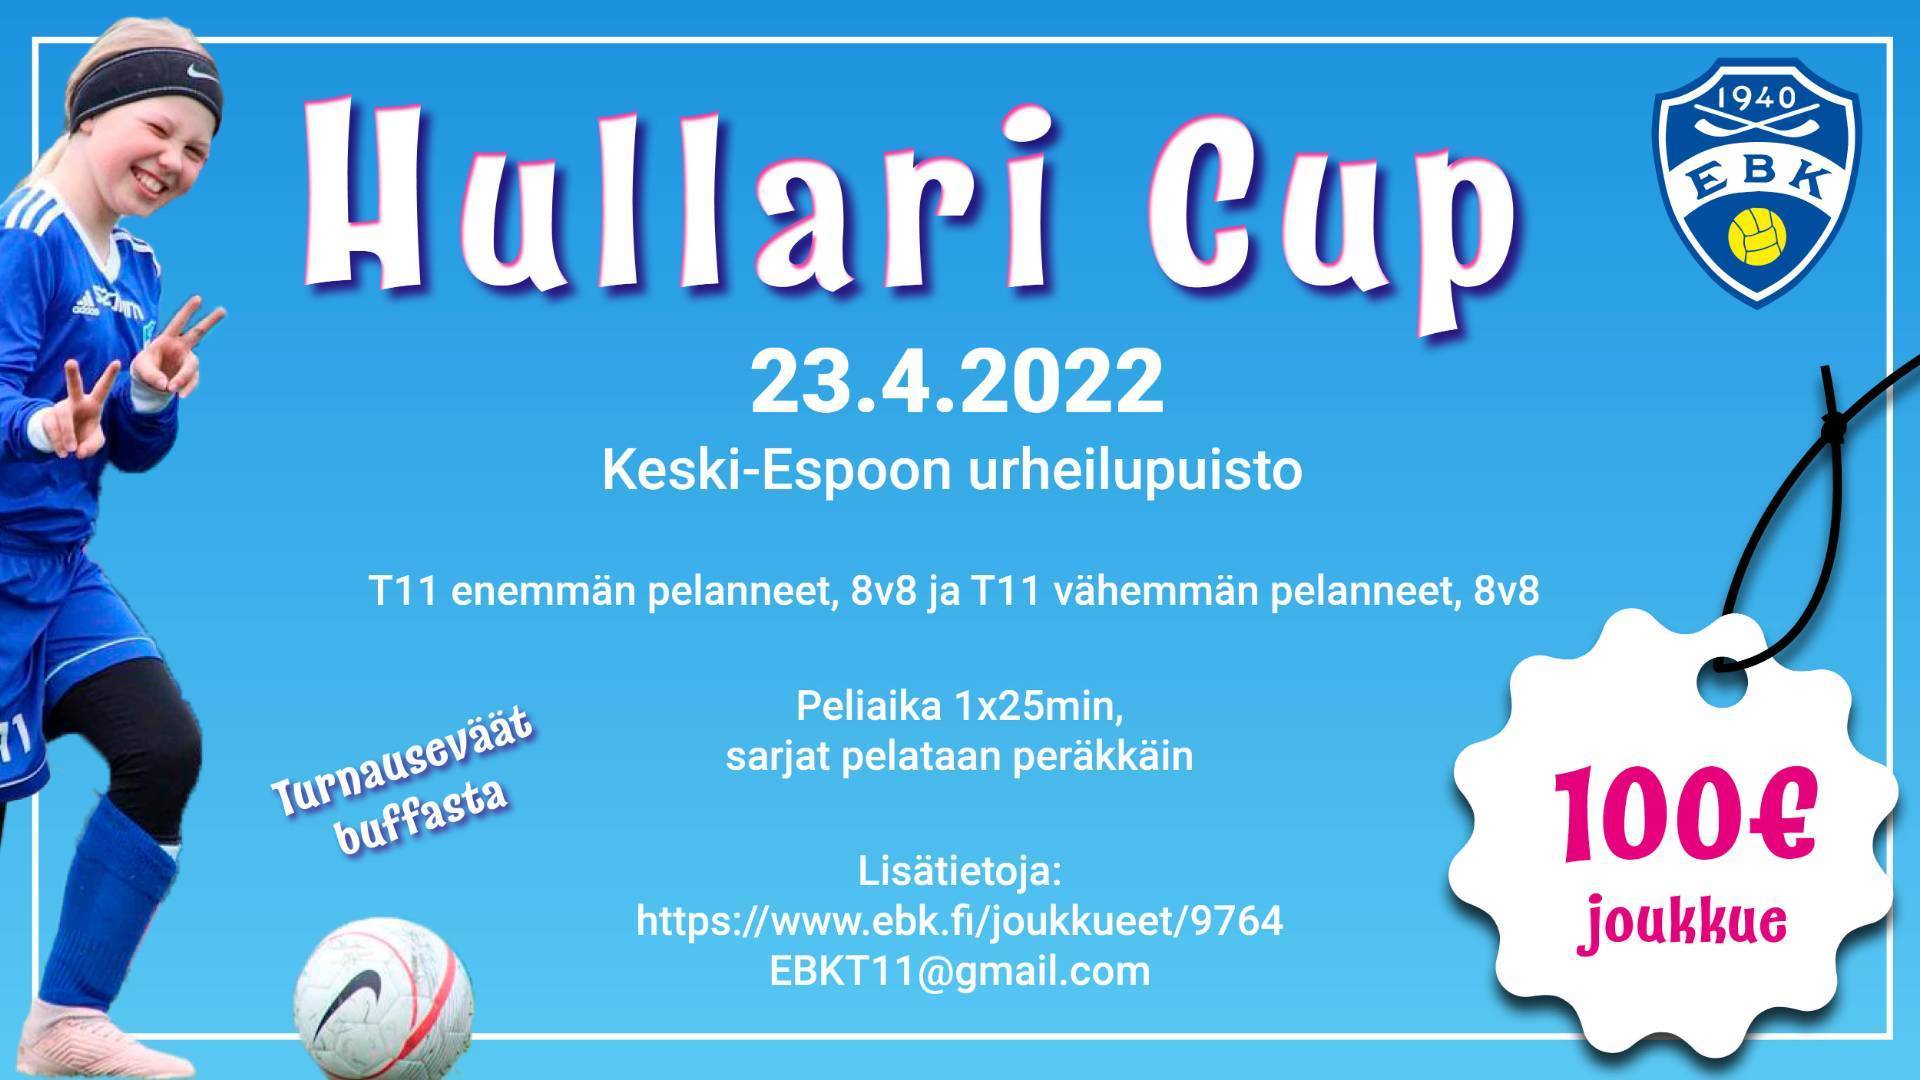 Hullari Cupin otteluohjelma julkaistu, tervetuloa mukaan lauantaina 23.4.2022 klo 9-18